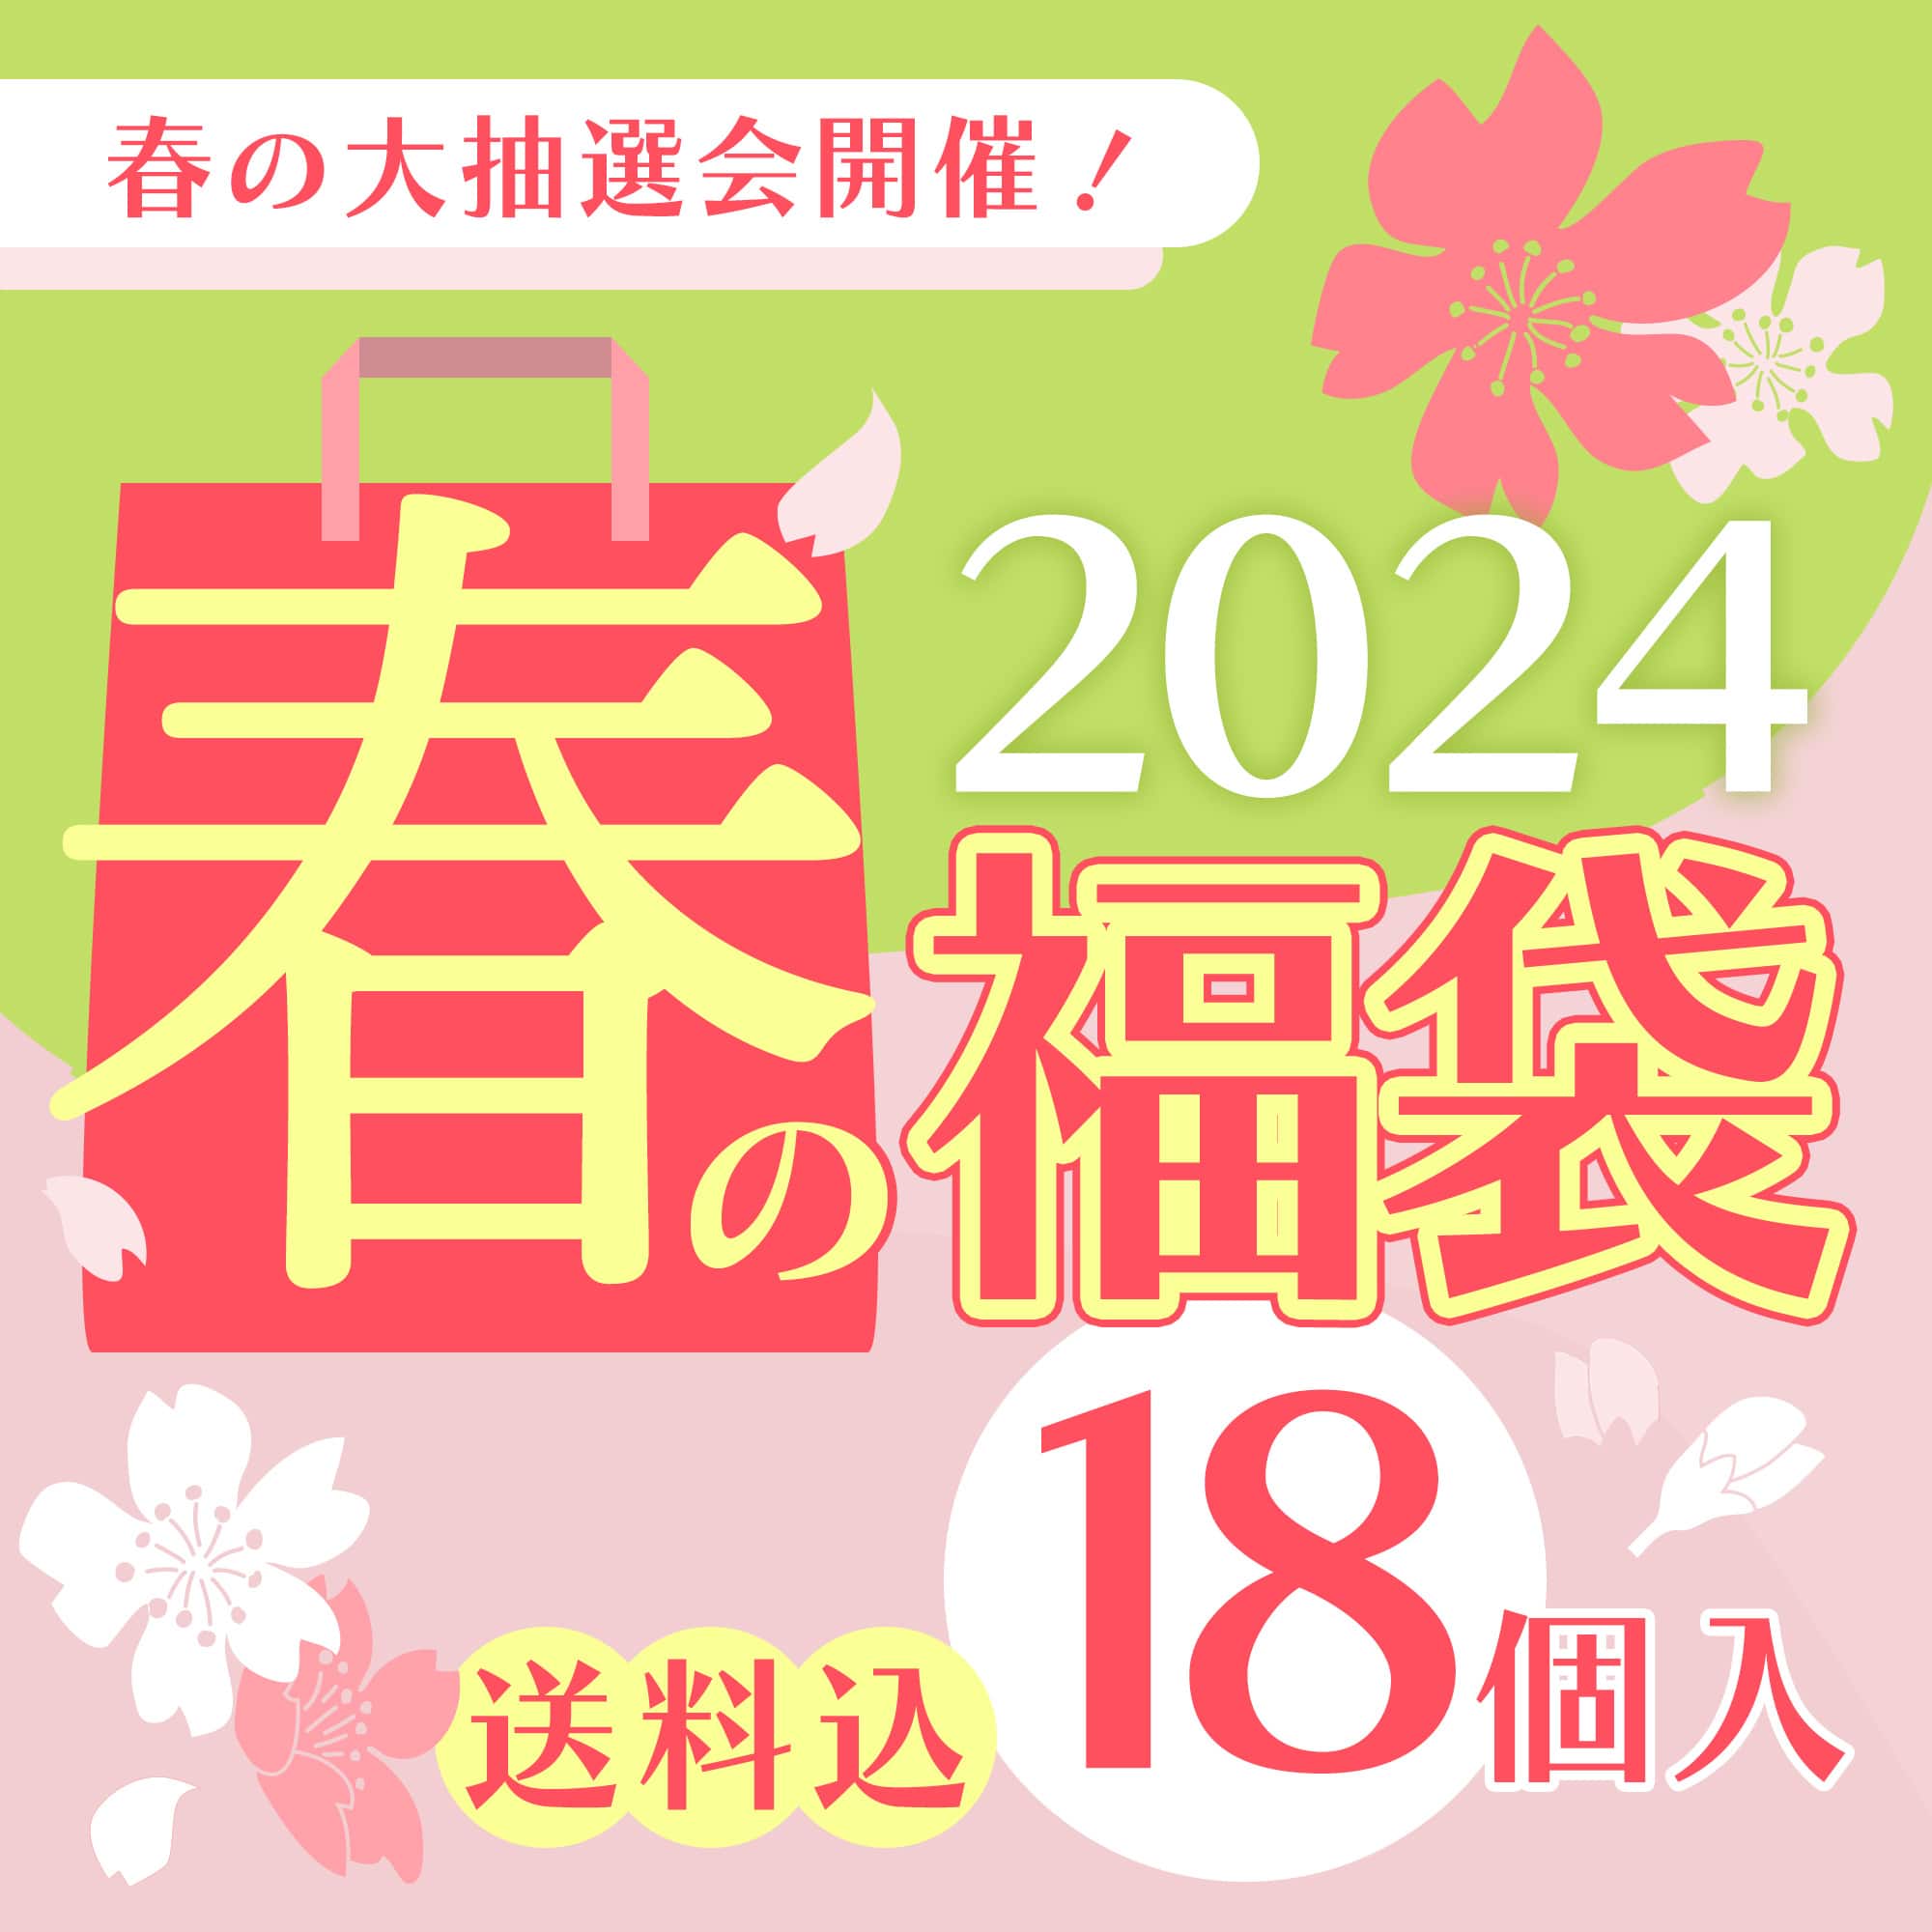 春の福袋2024(18個入)